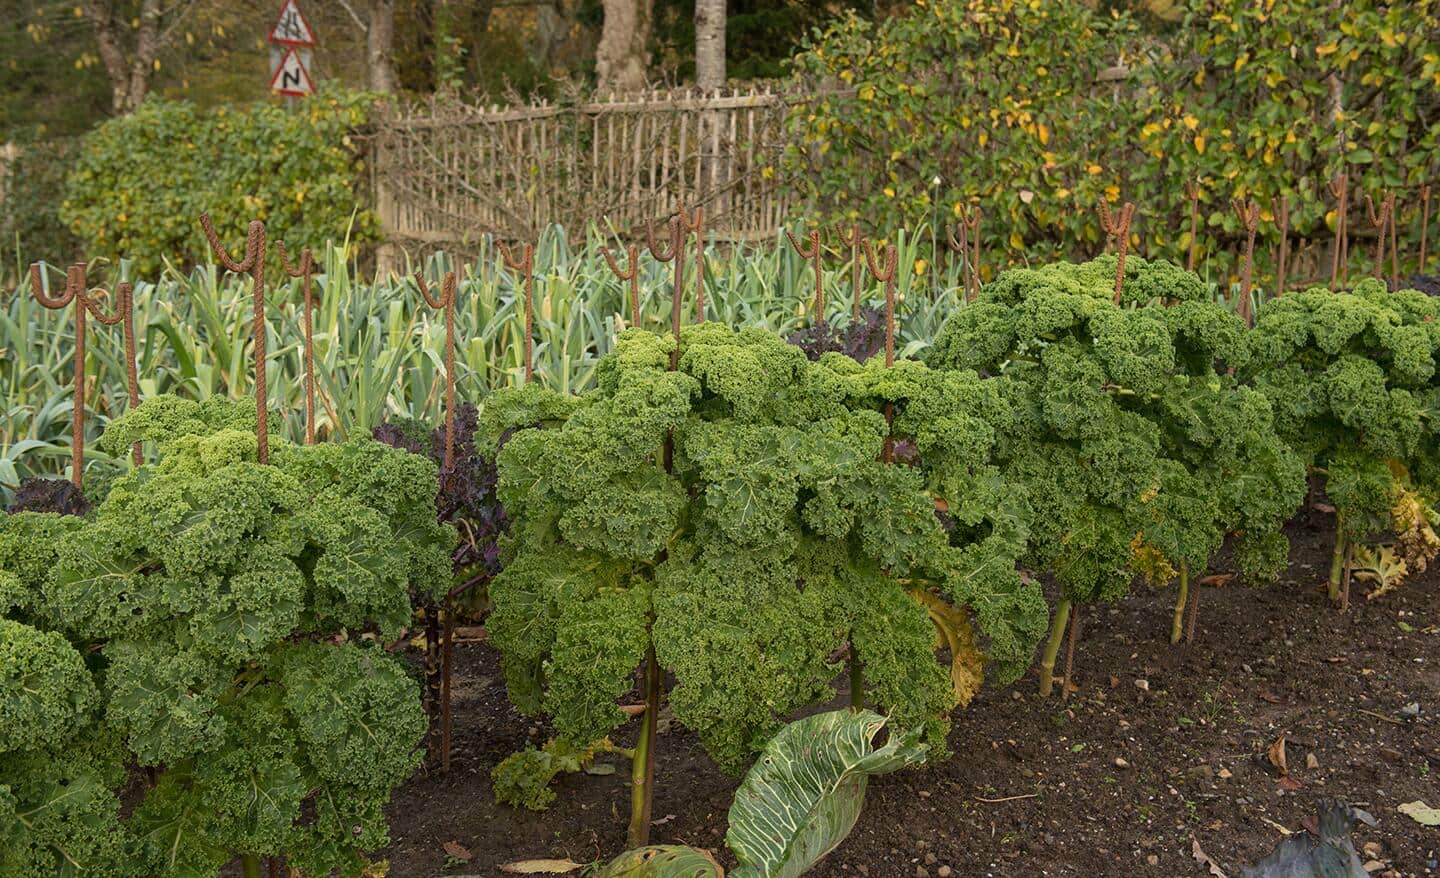 A row of kale in a vegetable garden